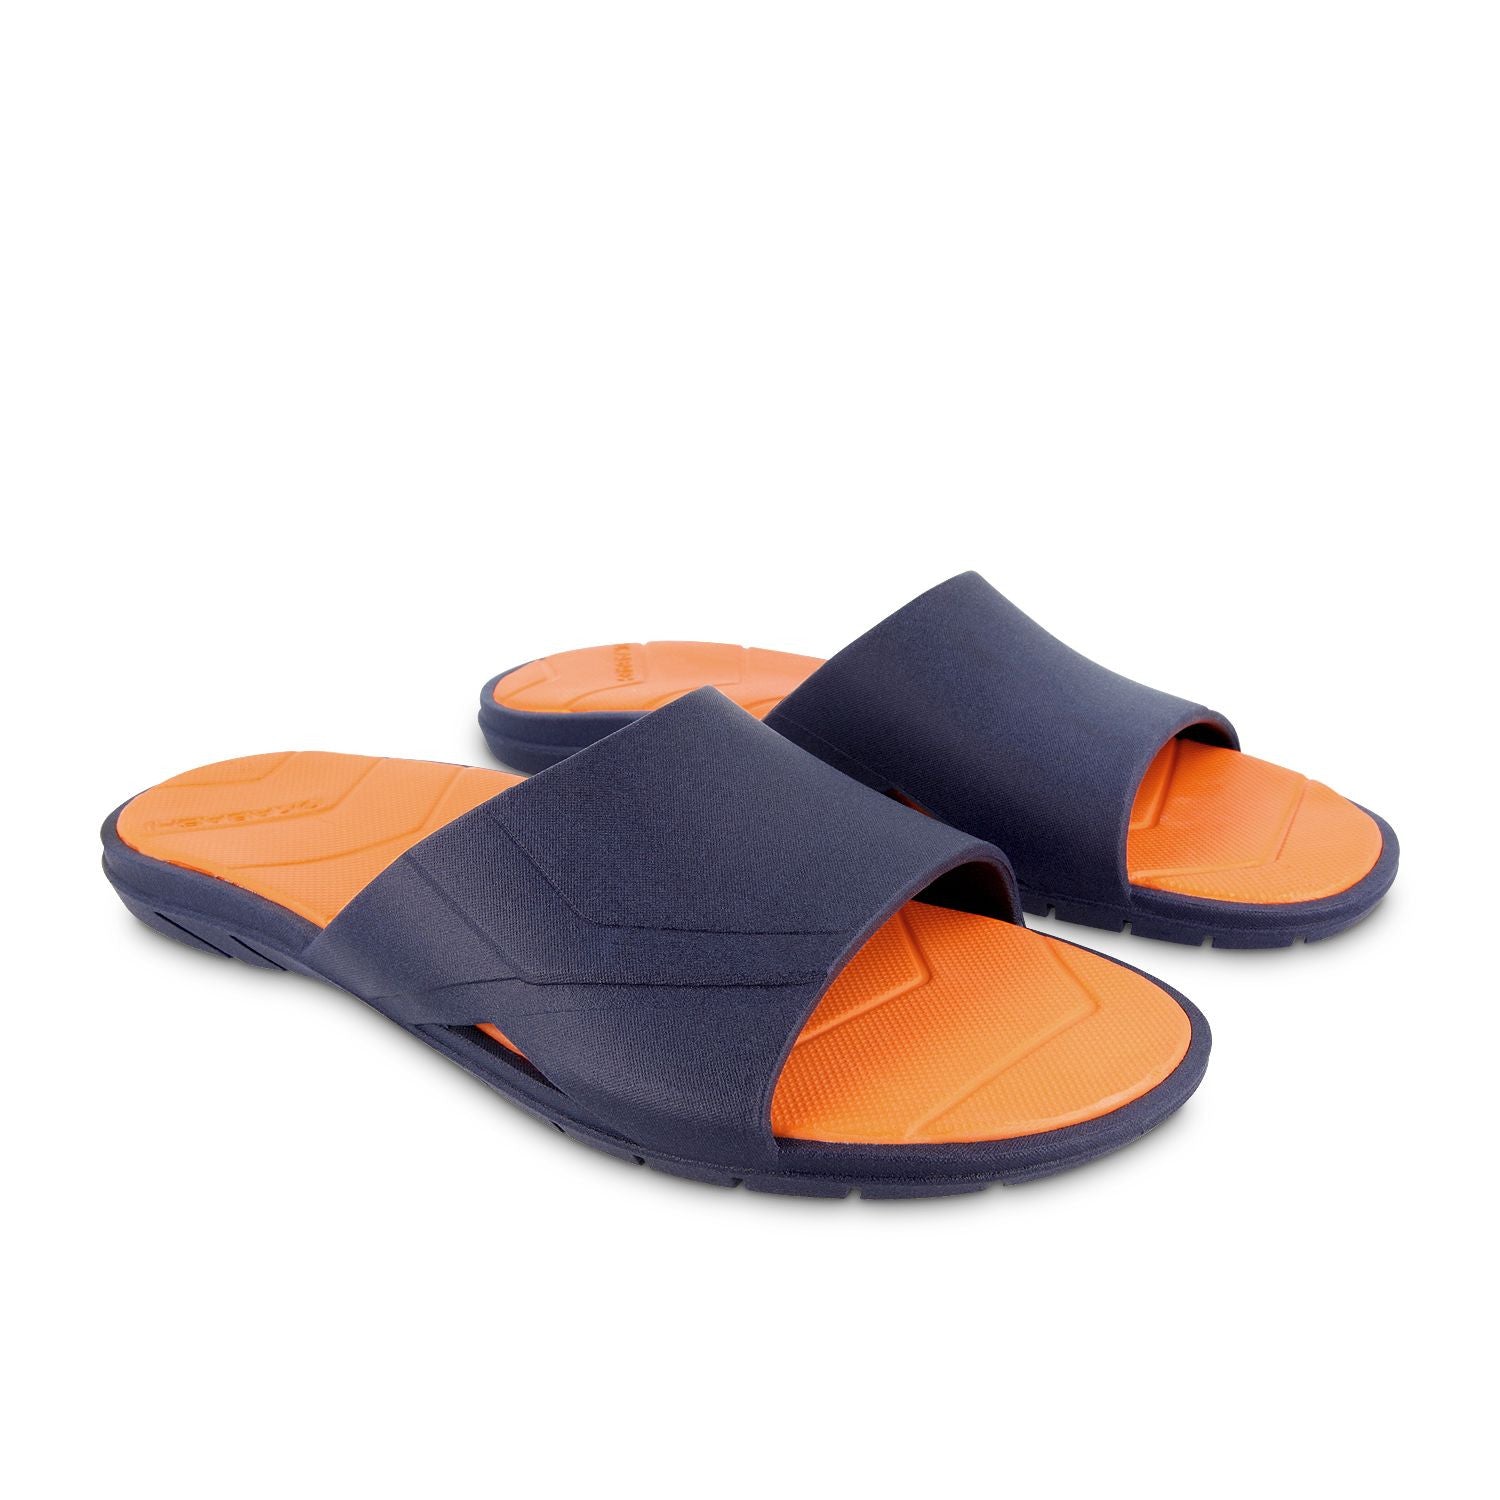 okabashi men's sandals